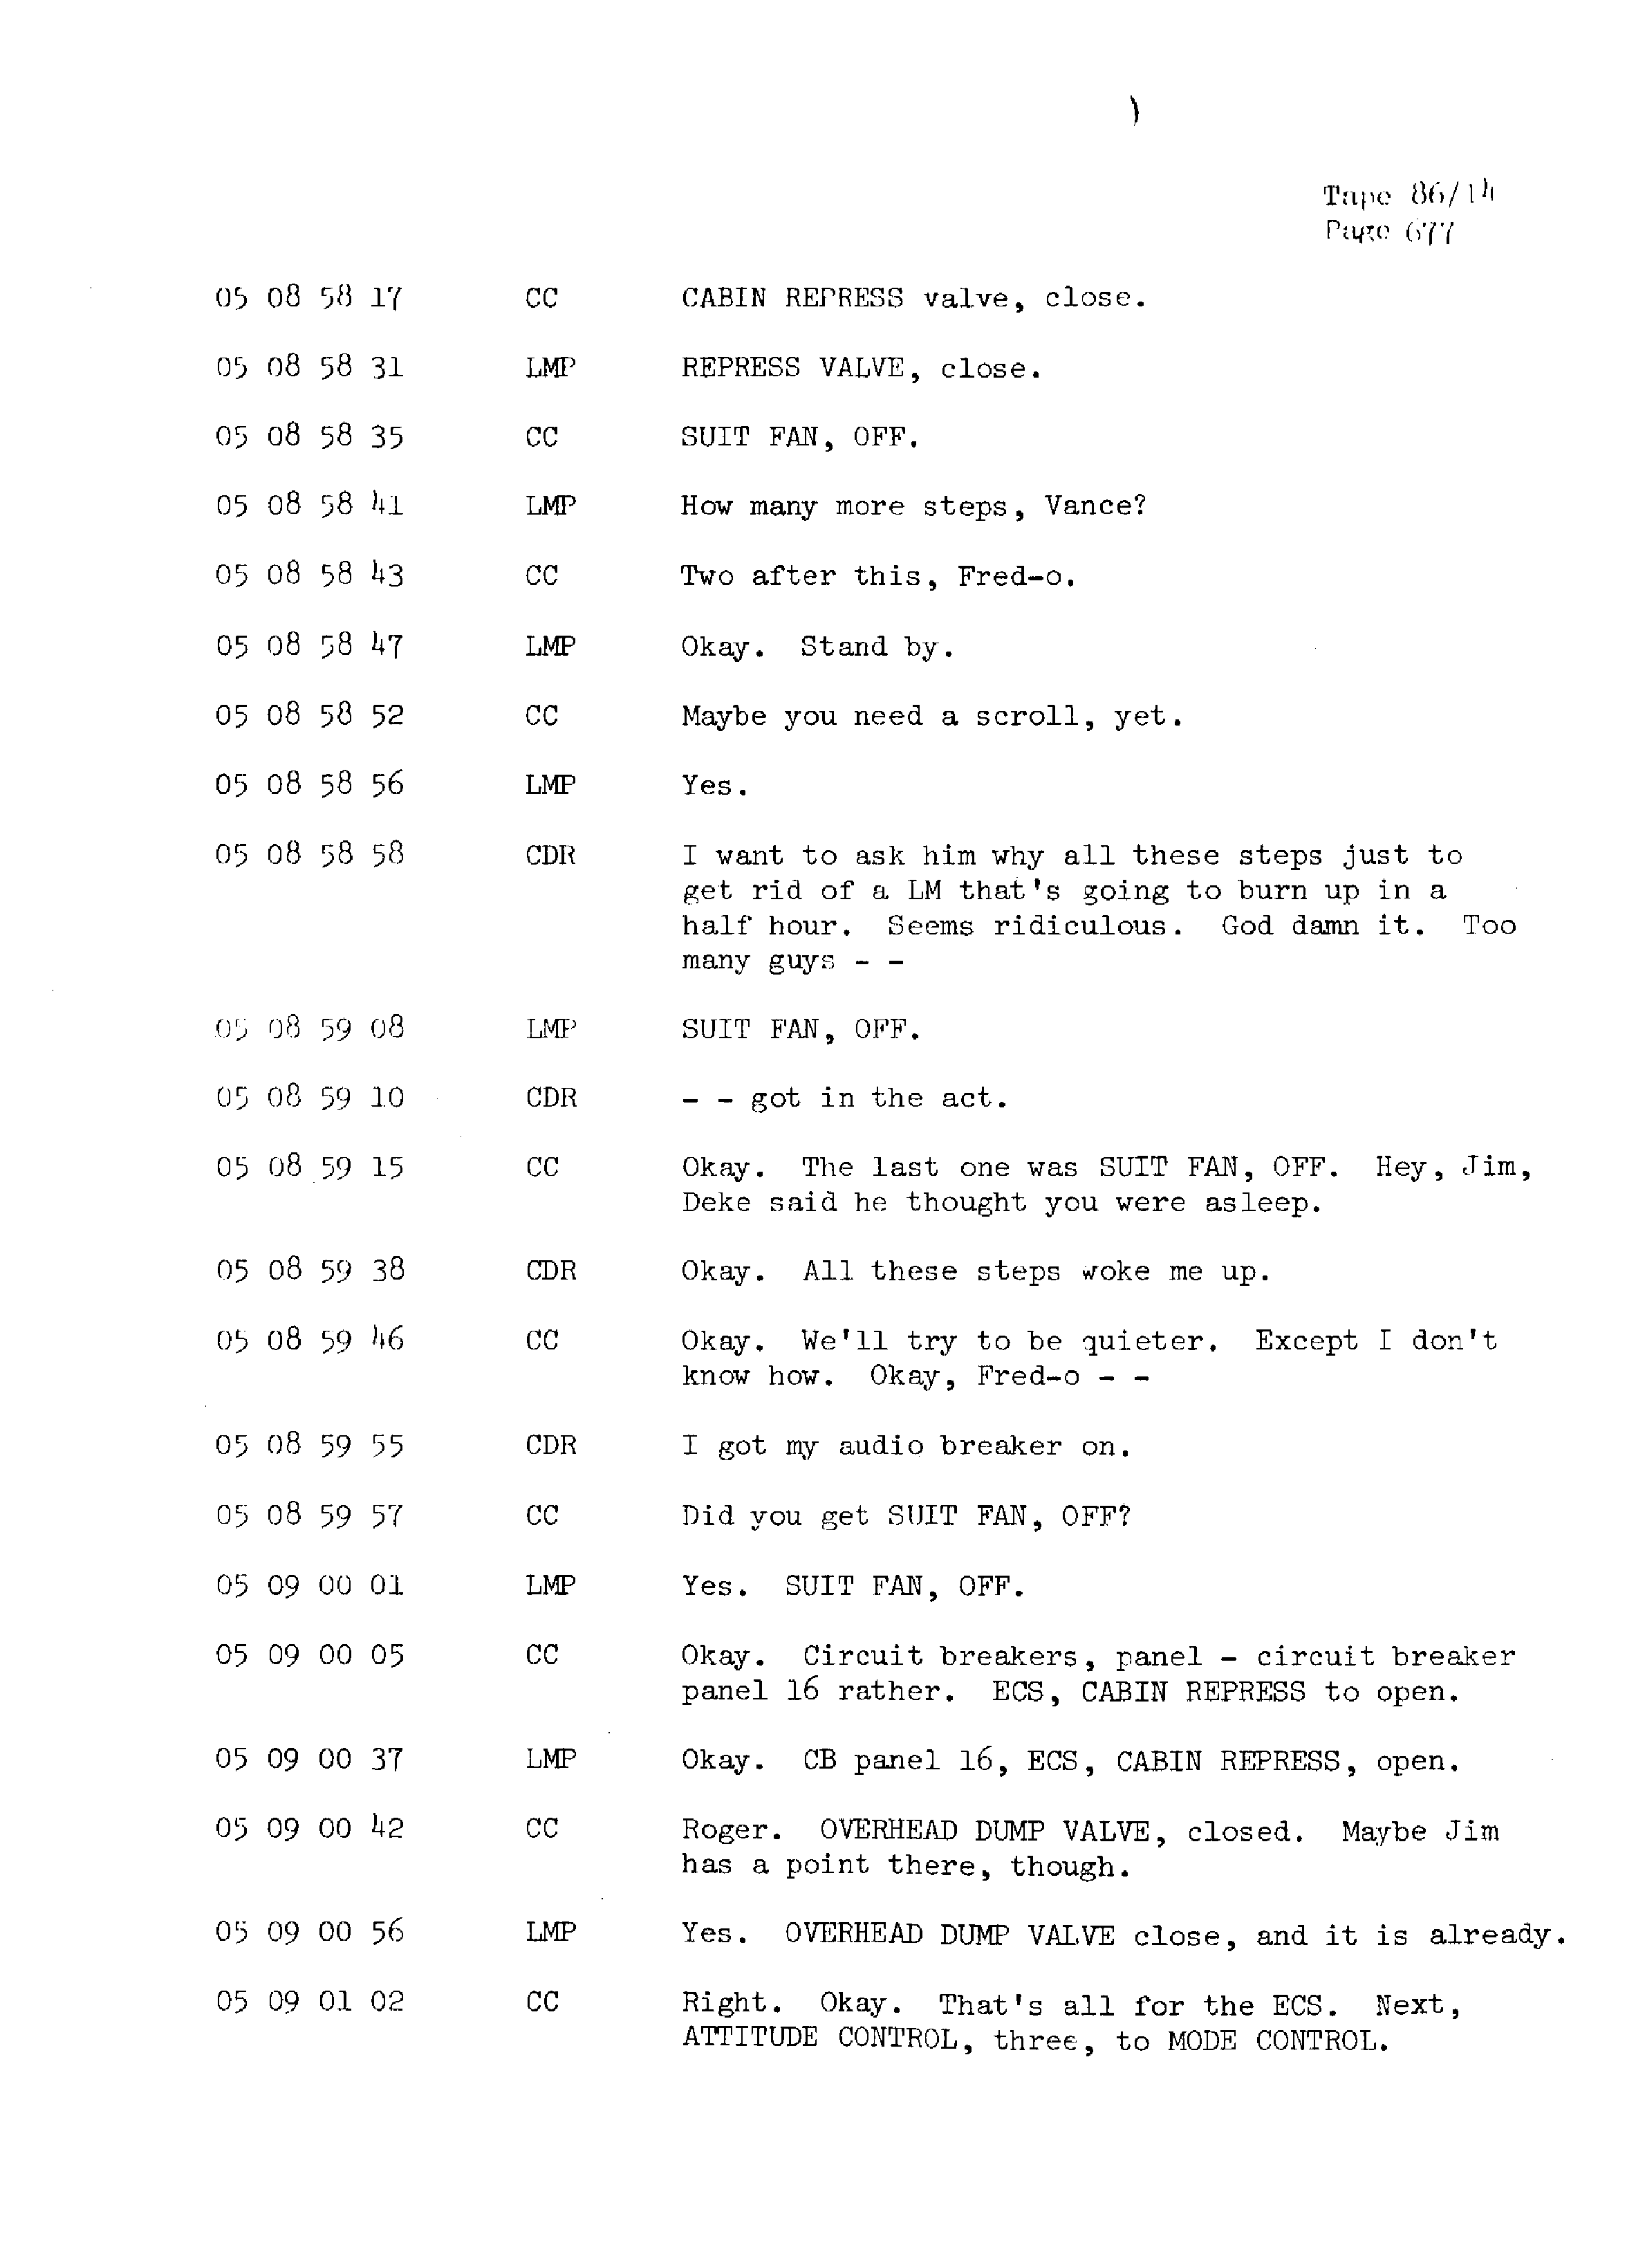 Page 684 of Apollo 13’s original transcript